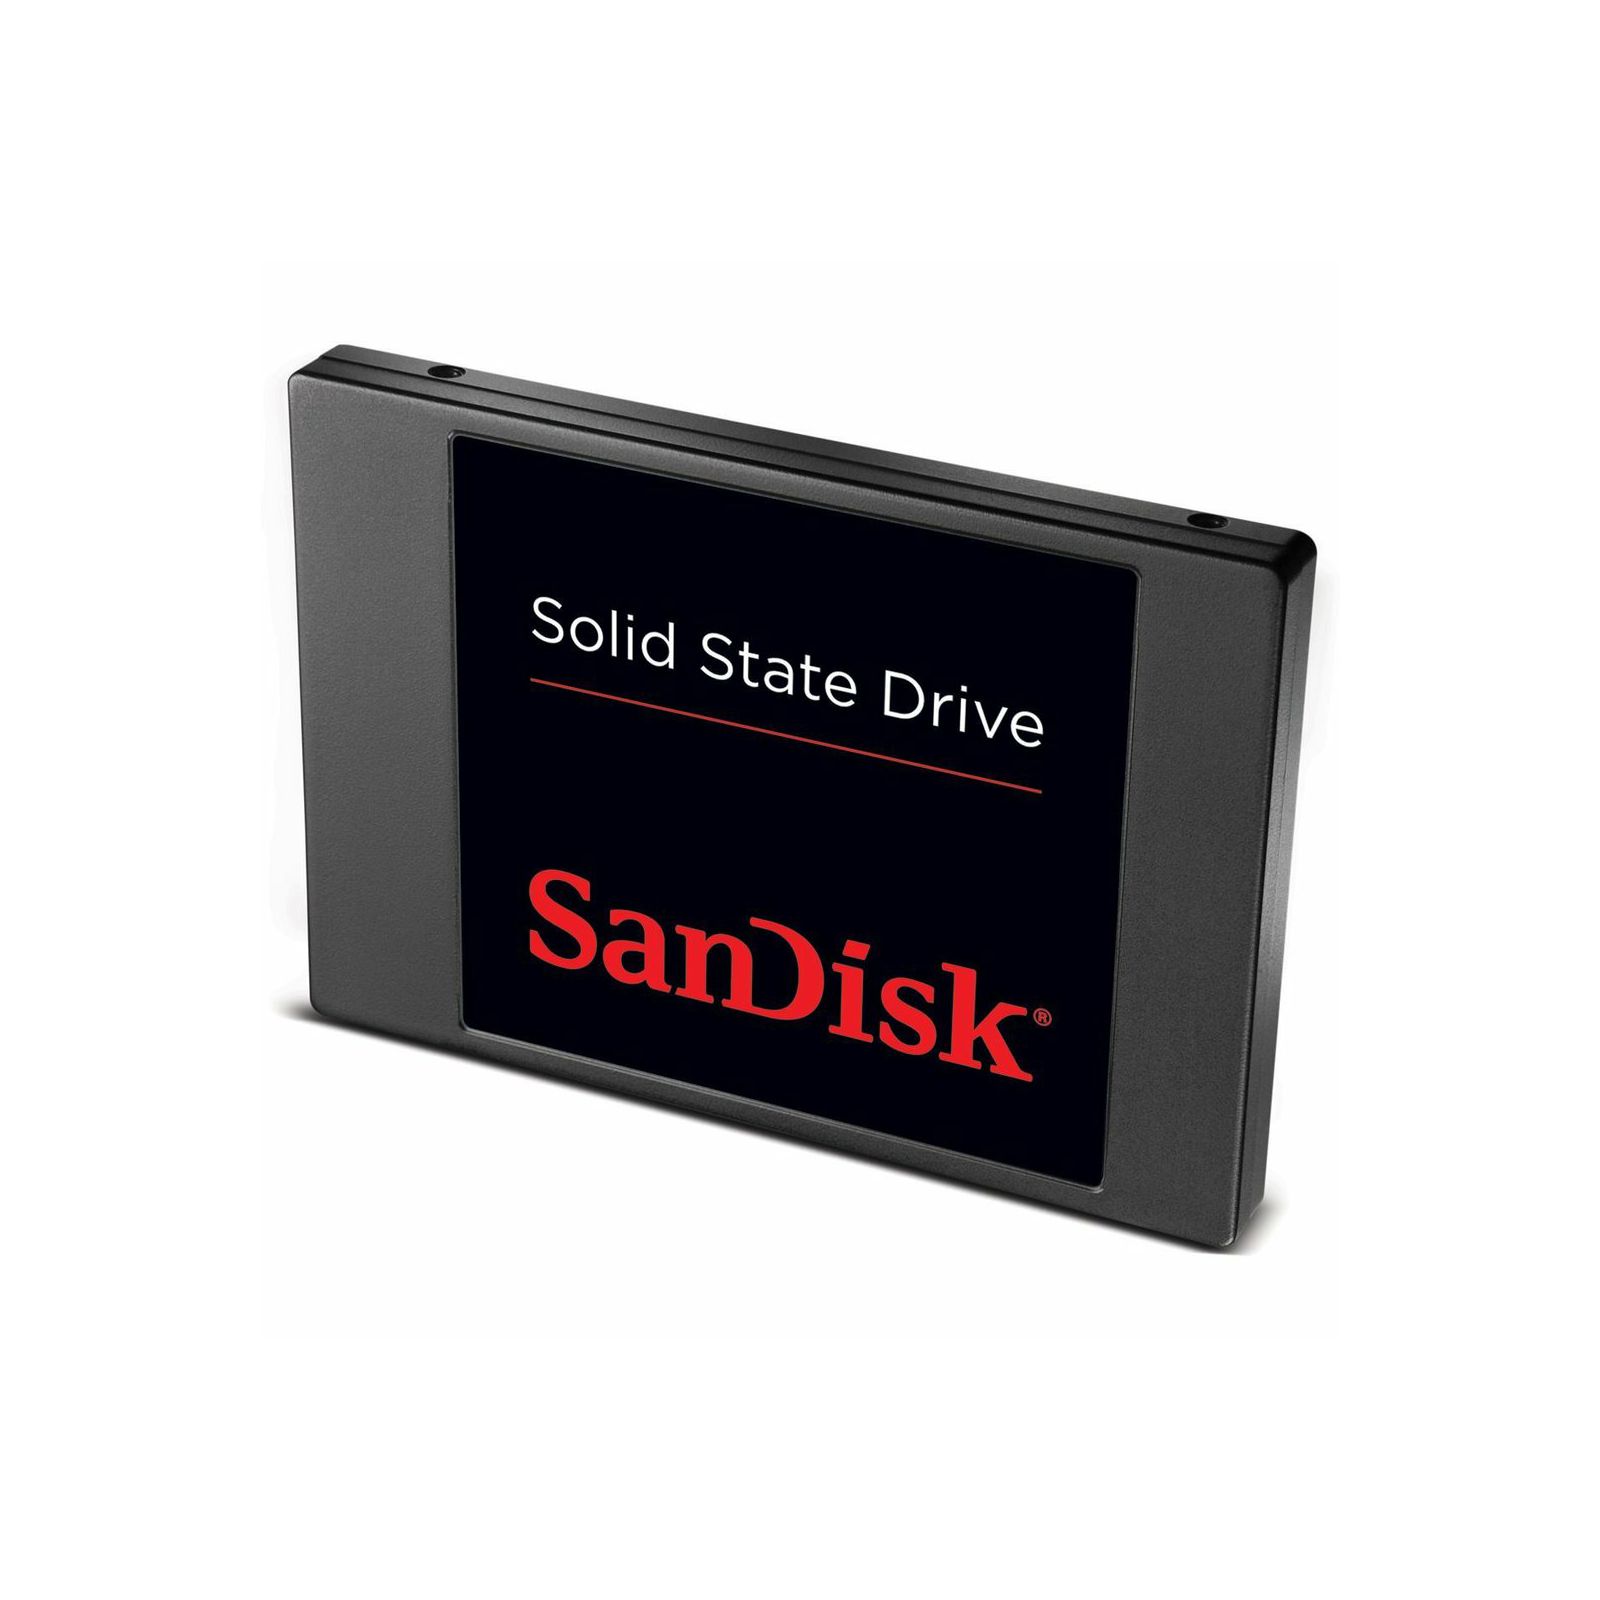 SanDisk SSD Pulse 128GB SDSSDP-128G-G25 Solid State Drive Disk